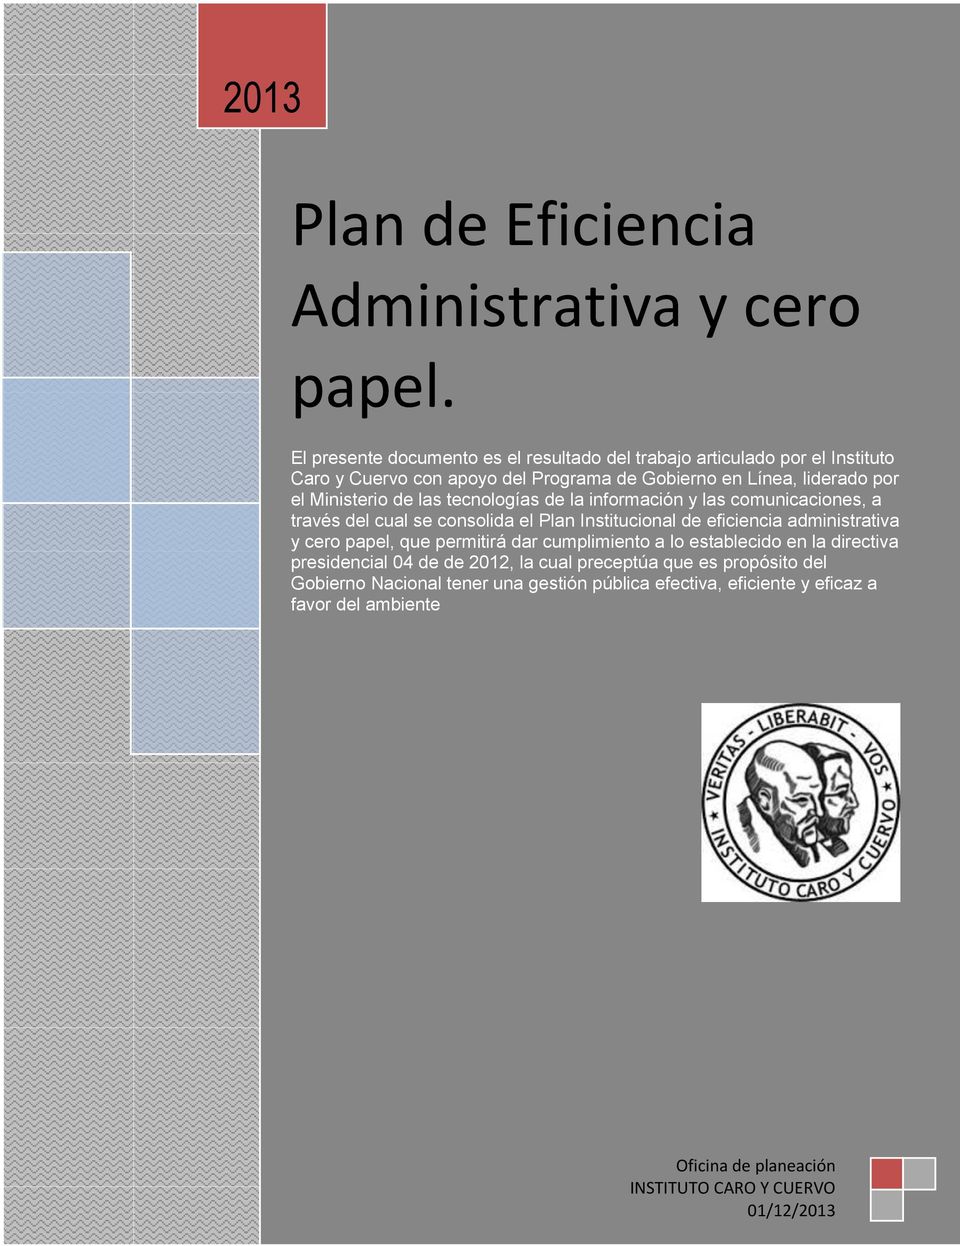 de las tecnologías de la información y las comunicaciones, a través del cual se consolida el Plan Institucional de eficiencia administrativa y cero papel, que